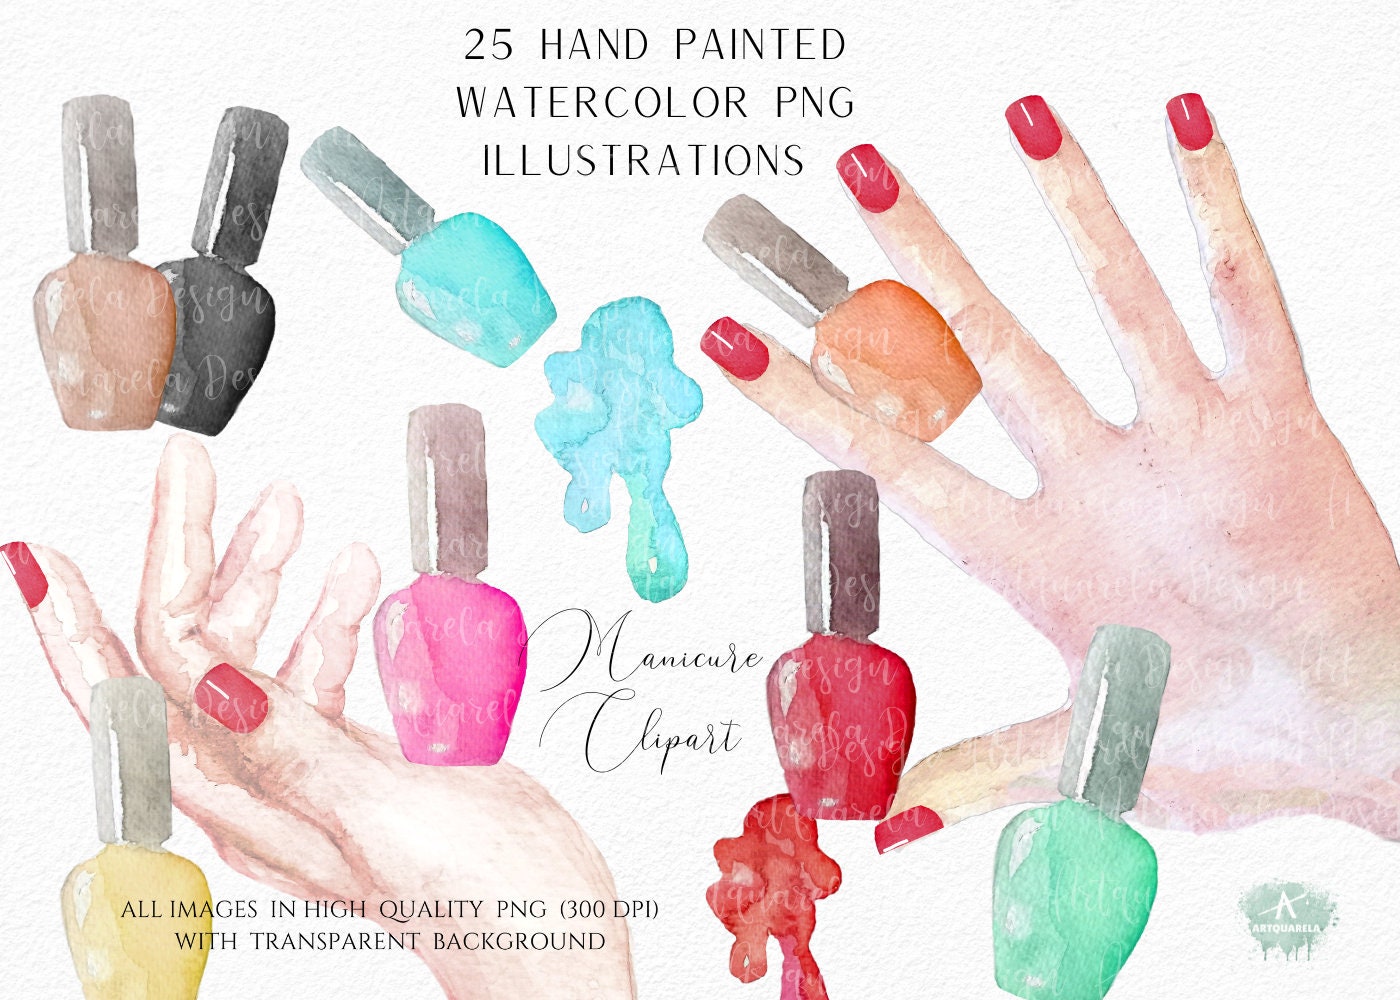 4. Manicure Clip Art - wide 5